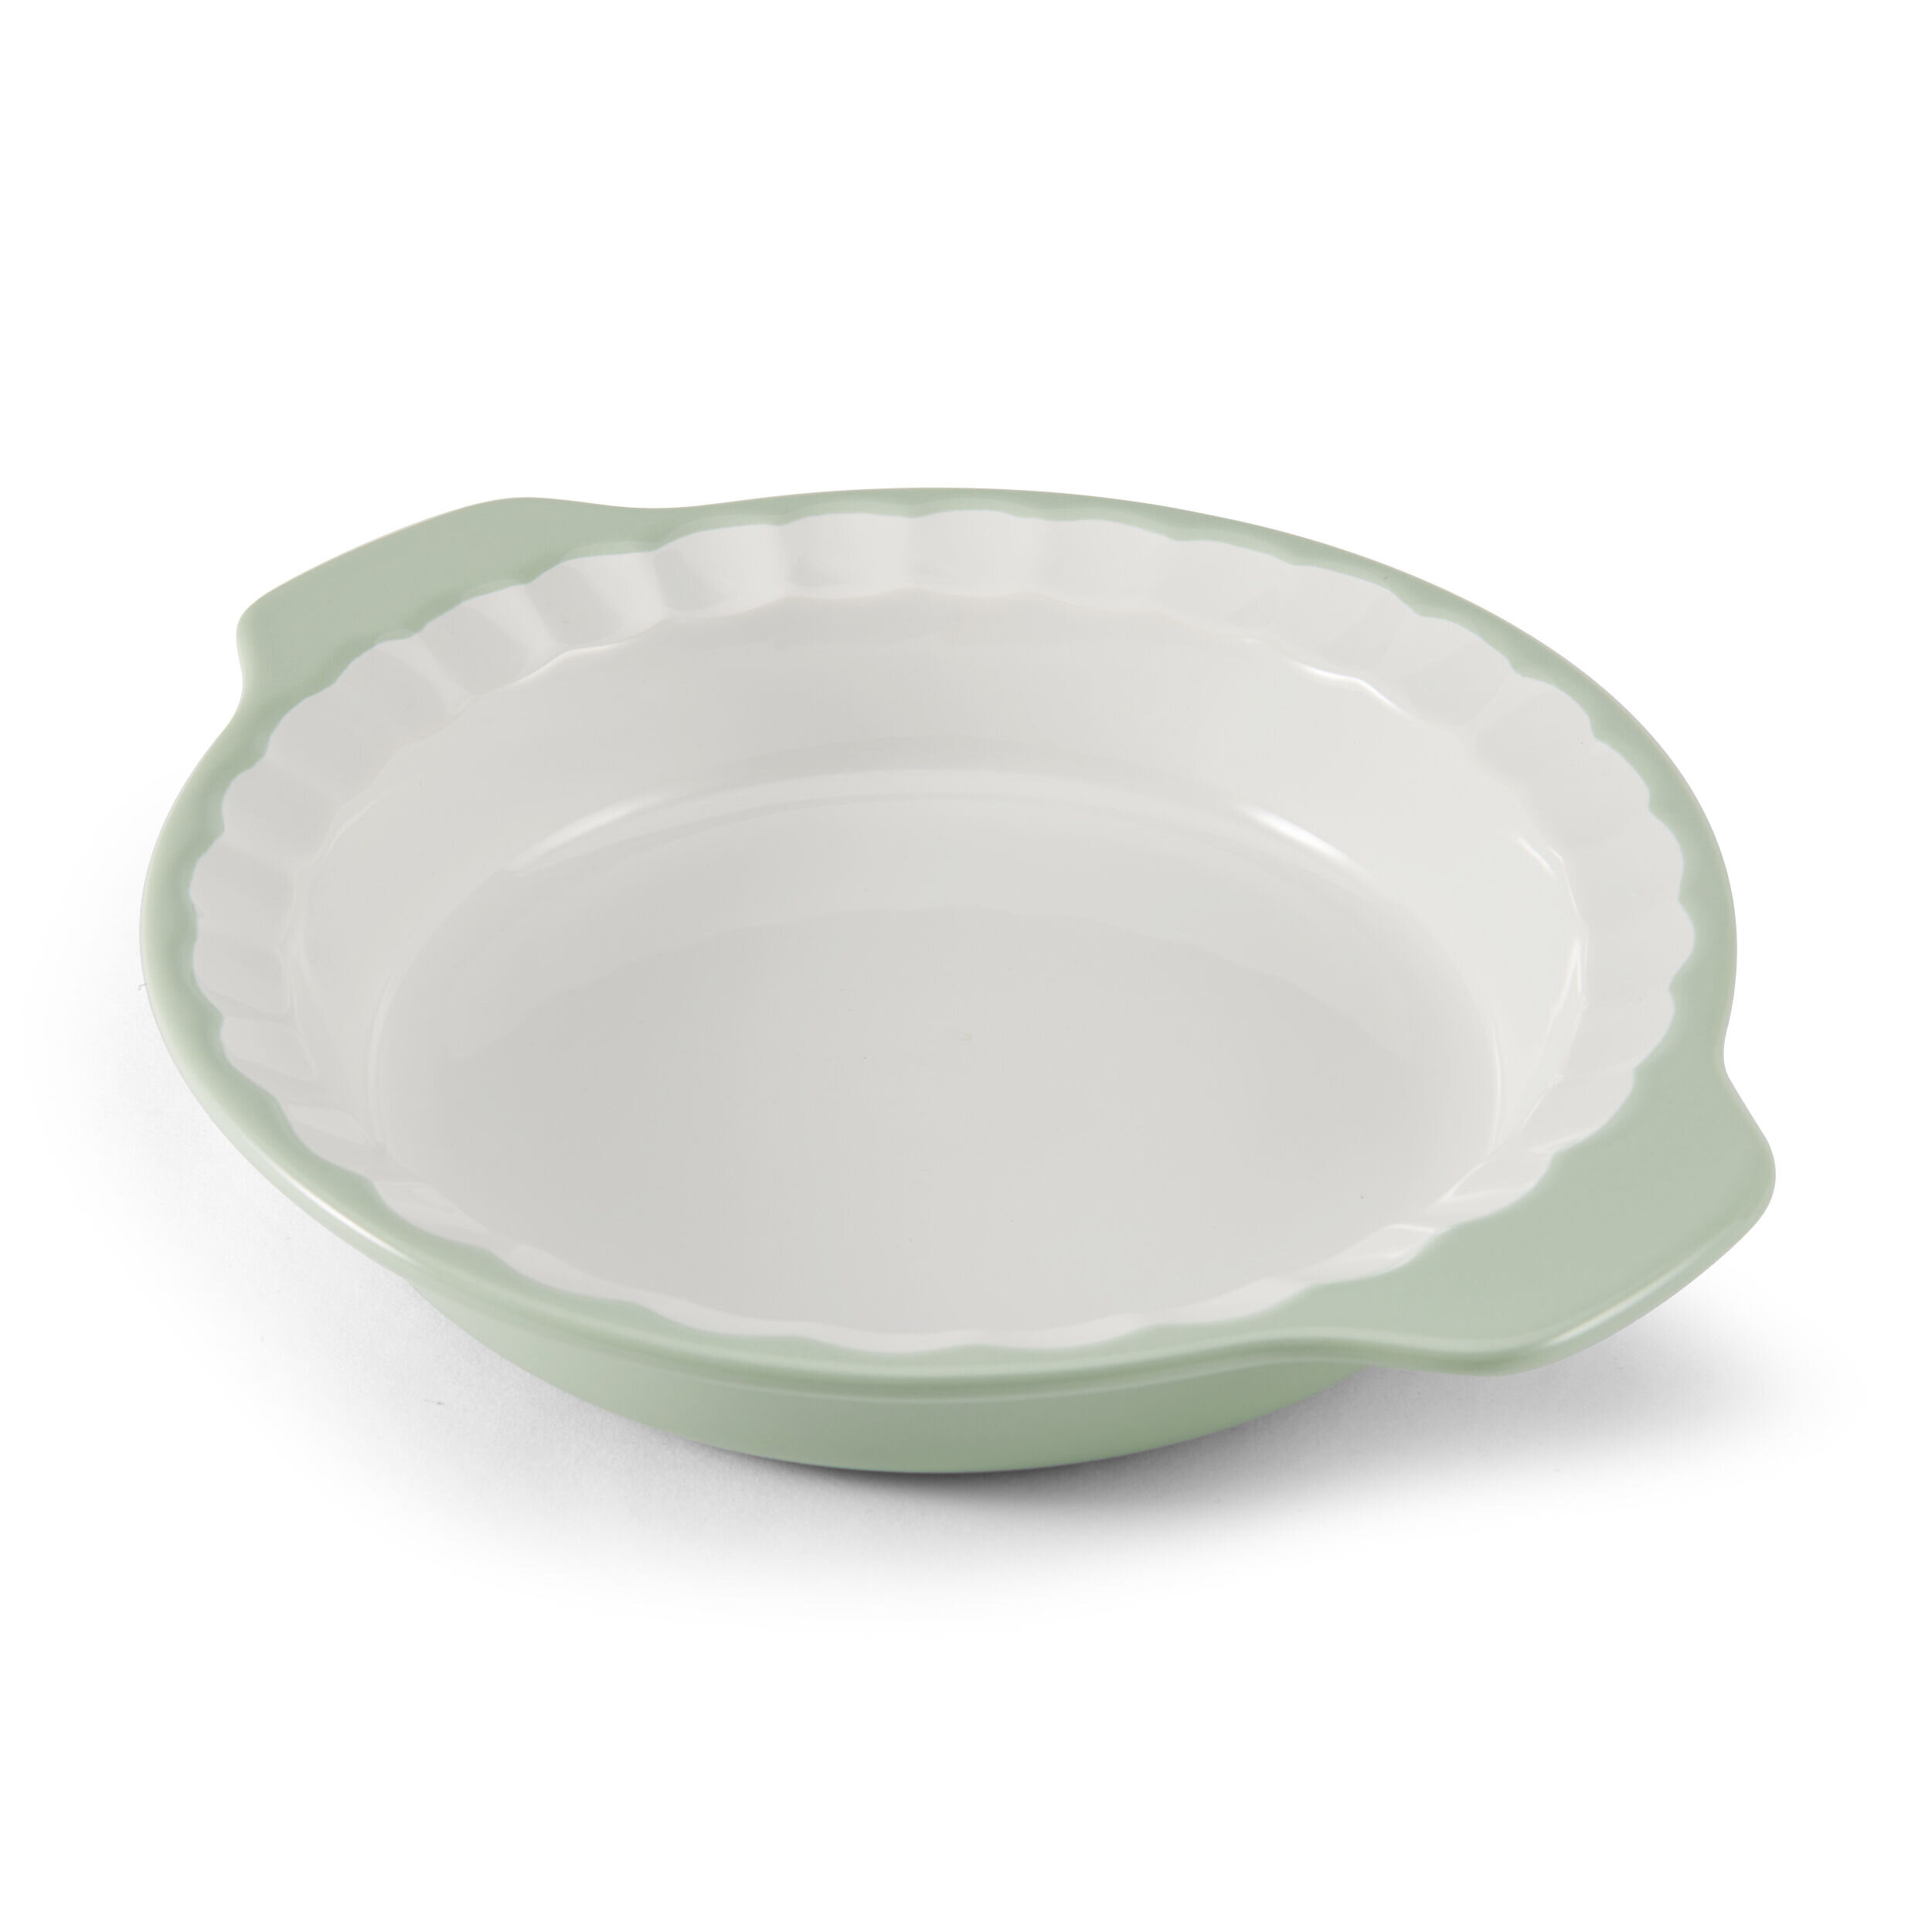 https://assets.wfcdn.com/im/00353593/compr-r85/1350/135051013/kitchenaid-vitrified-stoneware-pie-plate-9-inch-pistachio.jpg